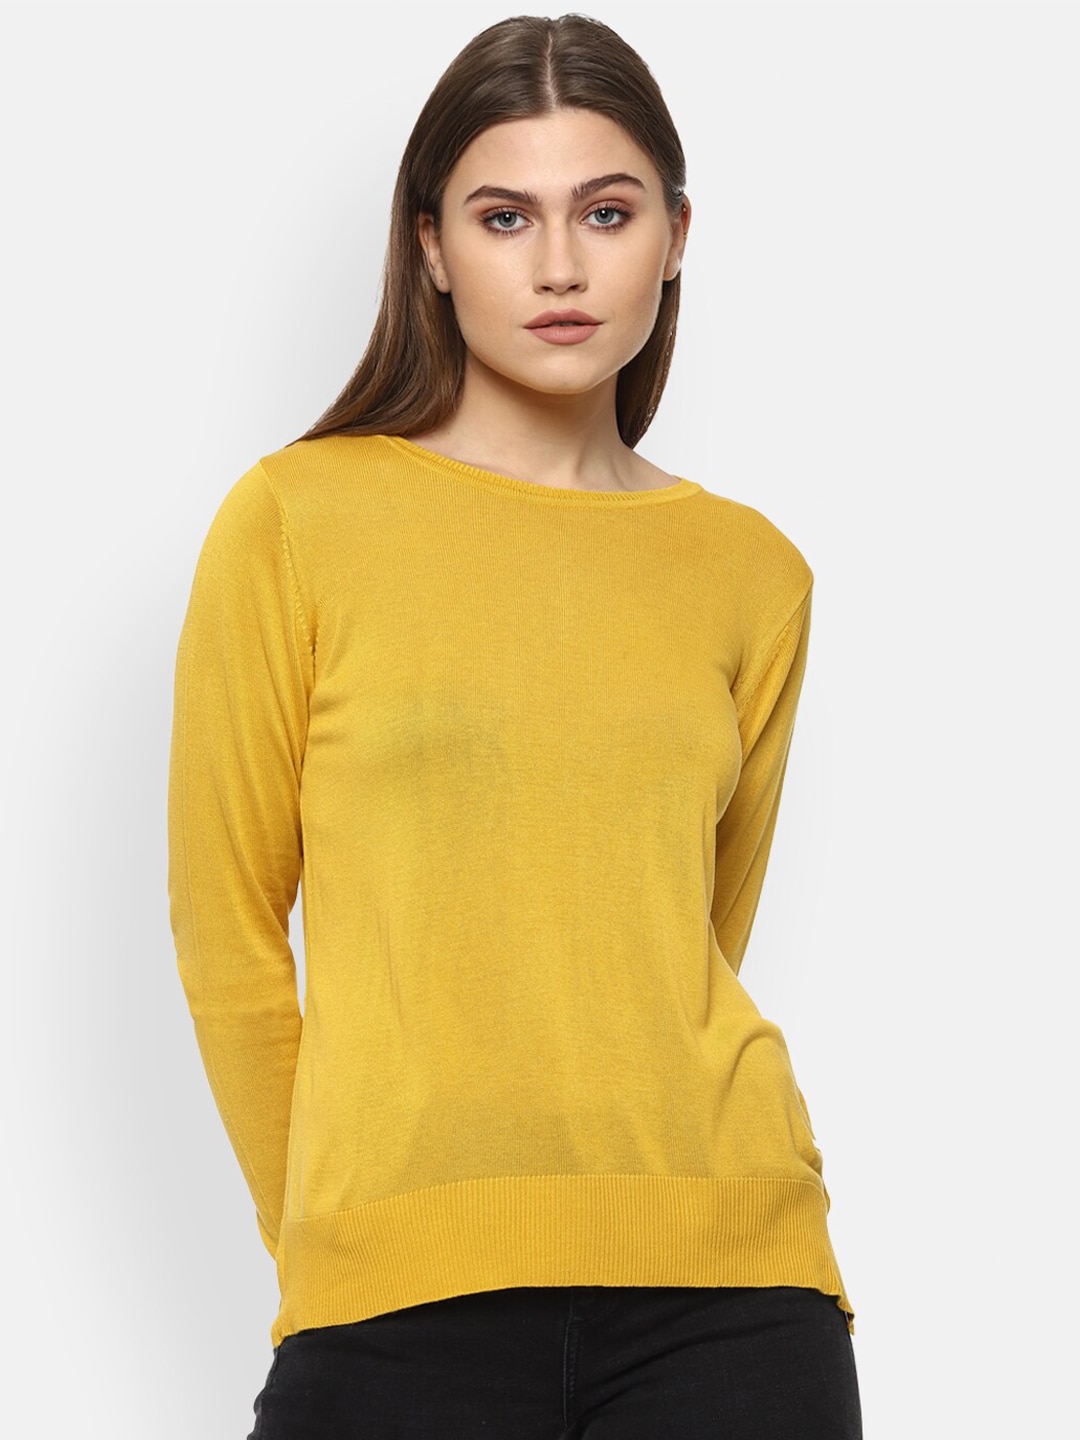 Van Heusen Woman Women Yellow Pullover Price in India